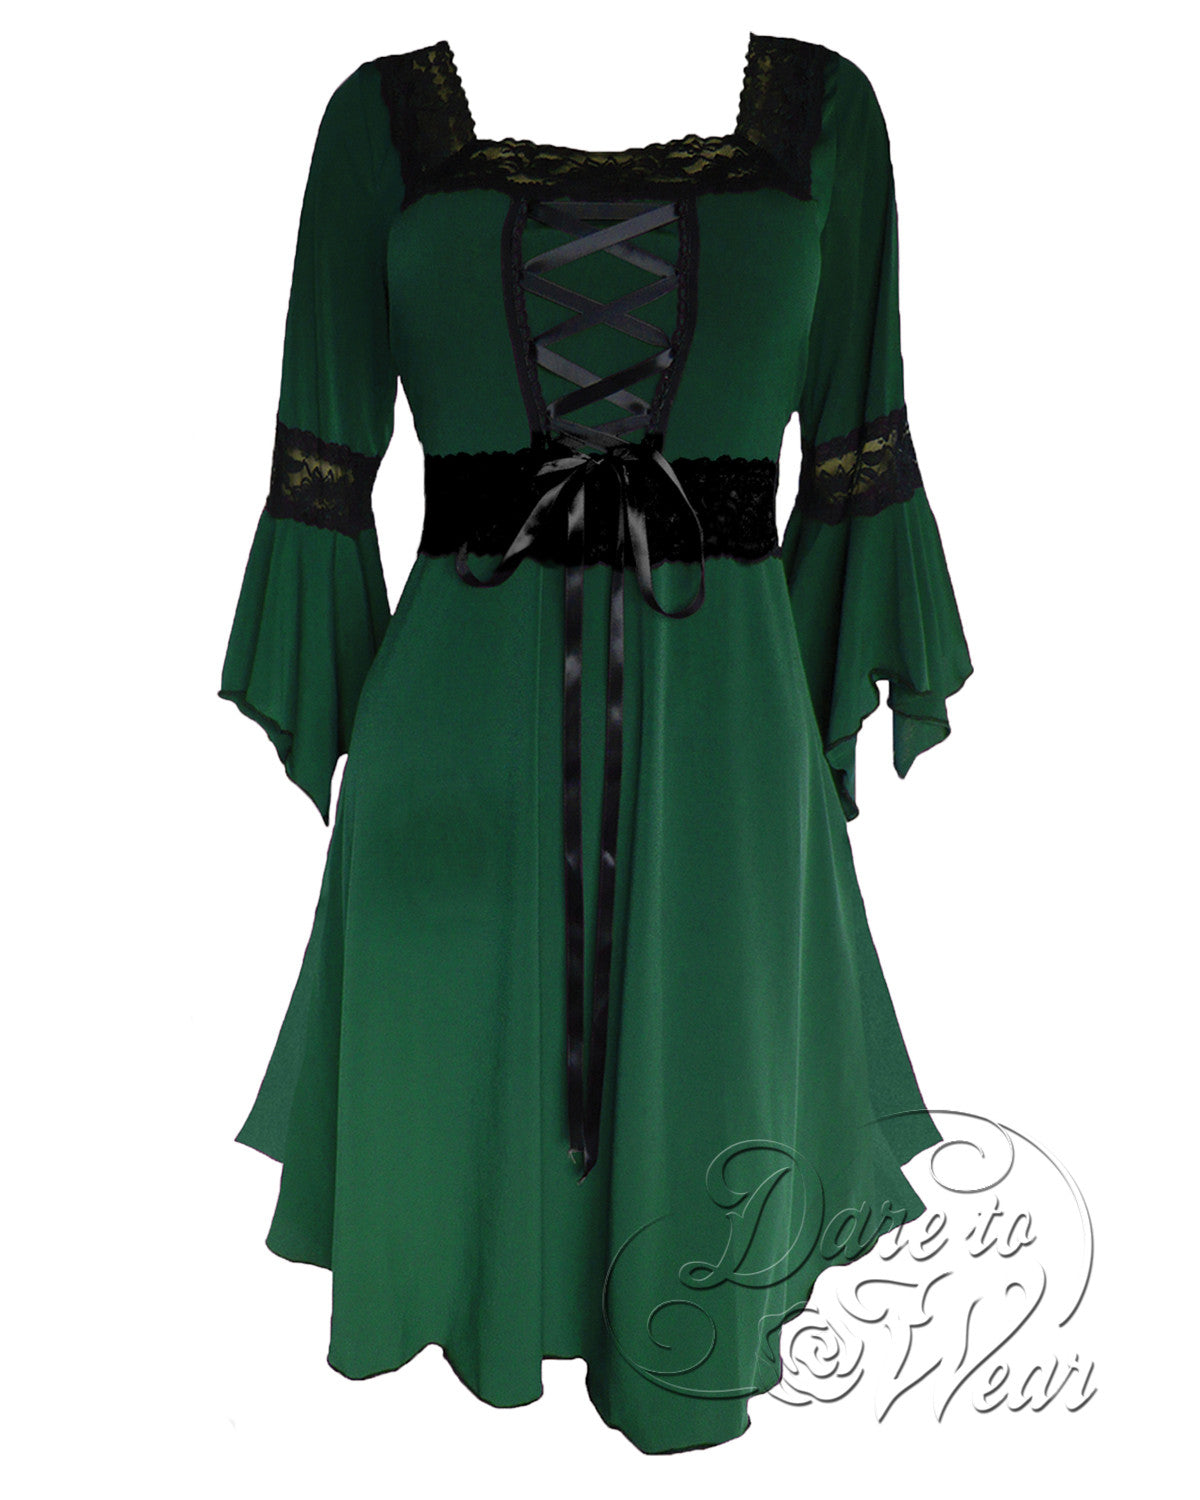 https://darefashionglobe.com/cdn/shop/products/D01-Envy-Renaissance-Gothic-Witch-Dress-Gown-W_d5e7287a-9320-4333-9d0d-2780c4c517f8_1200x.jpg?v=1660525989